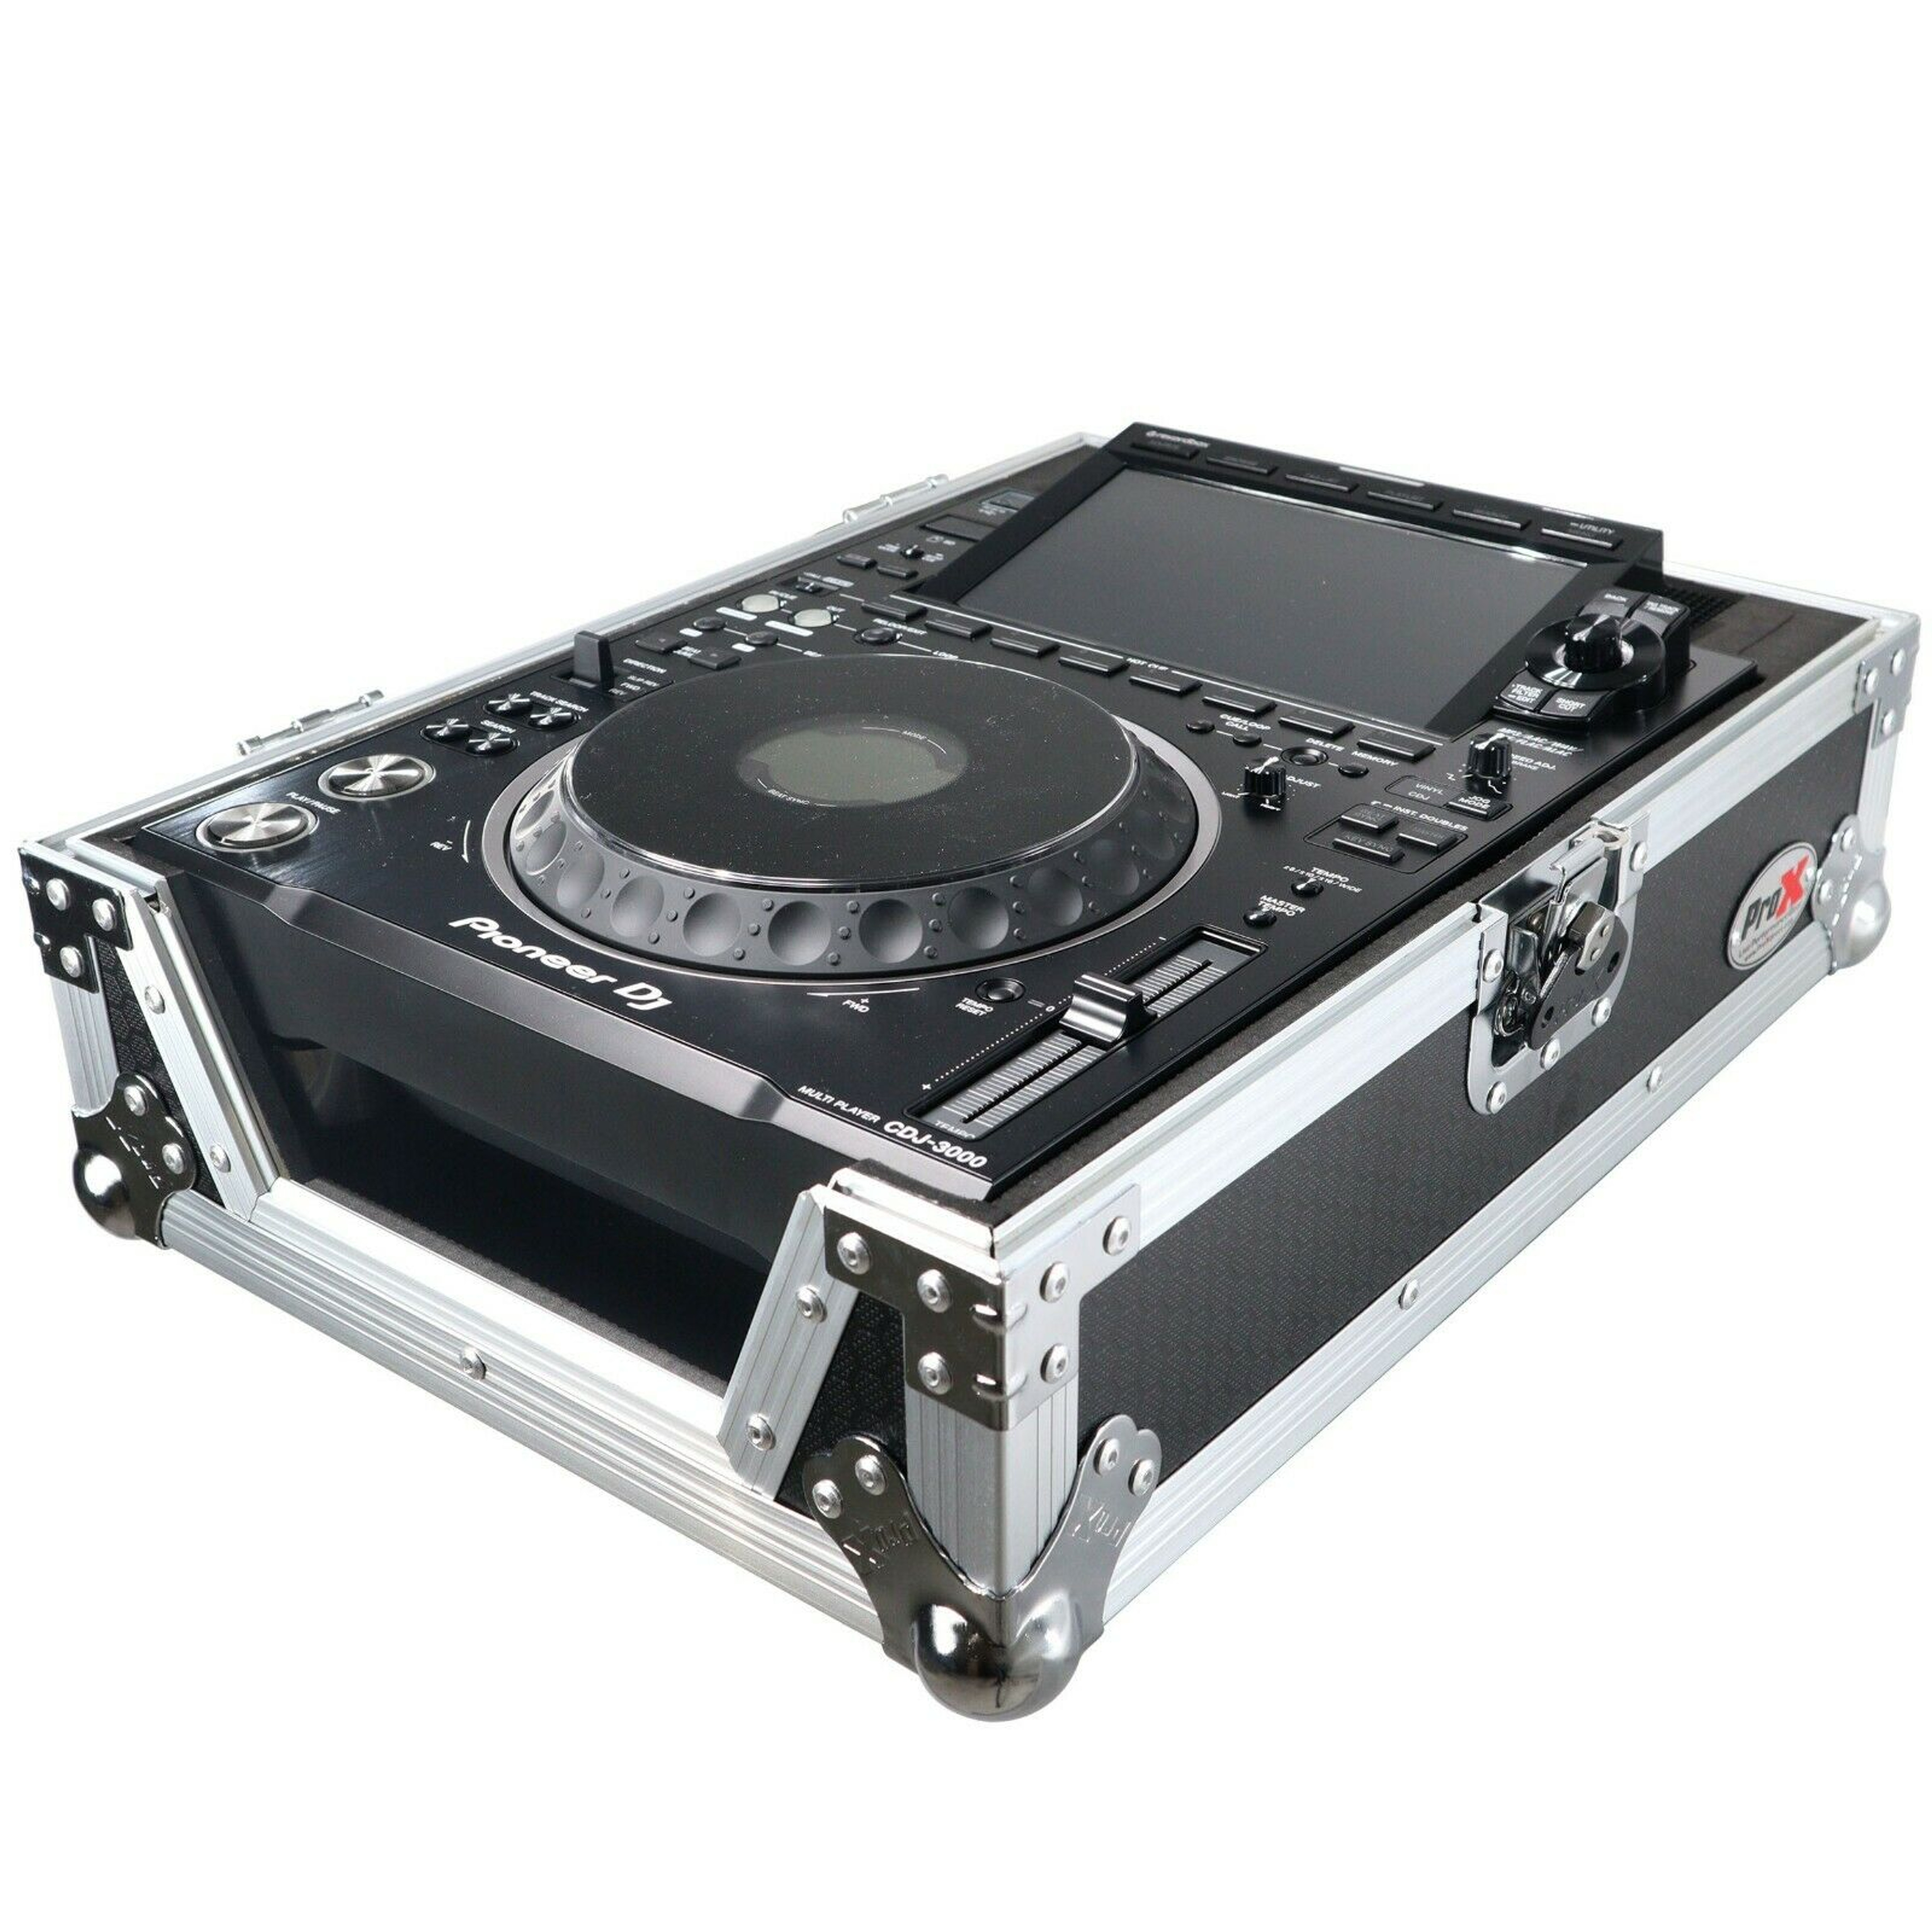 CDJ-3000 - Professional DJ multi player